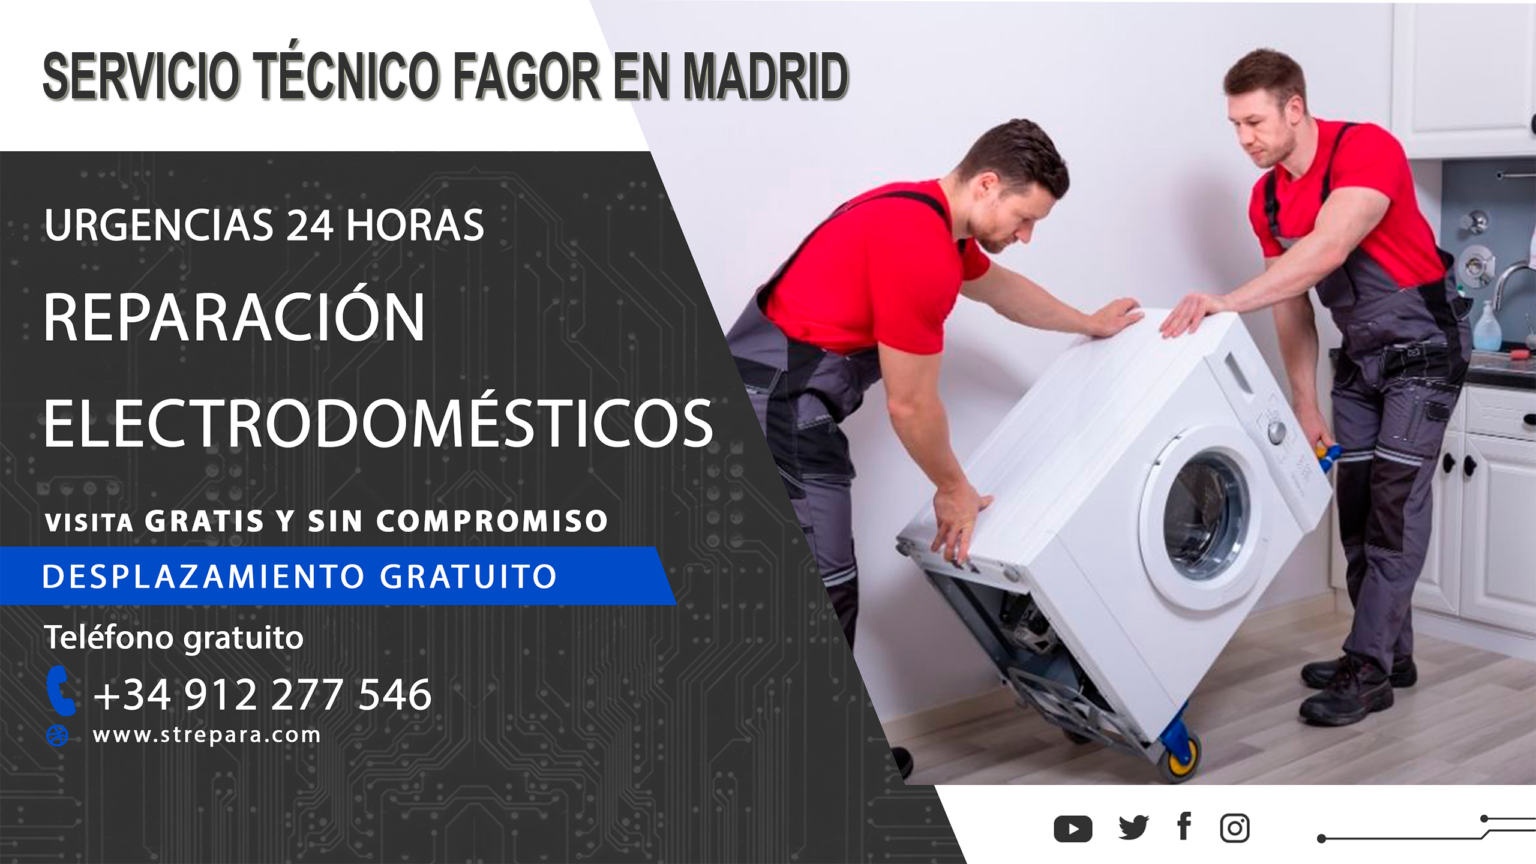 Servicio tecnico fagor en Madrid banner